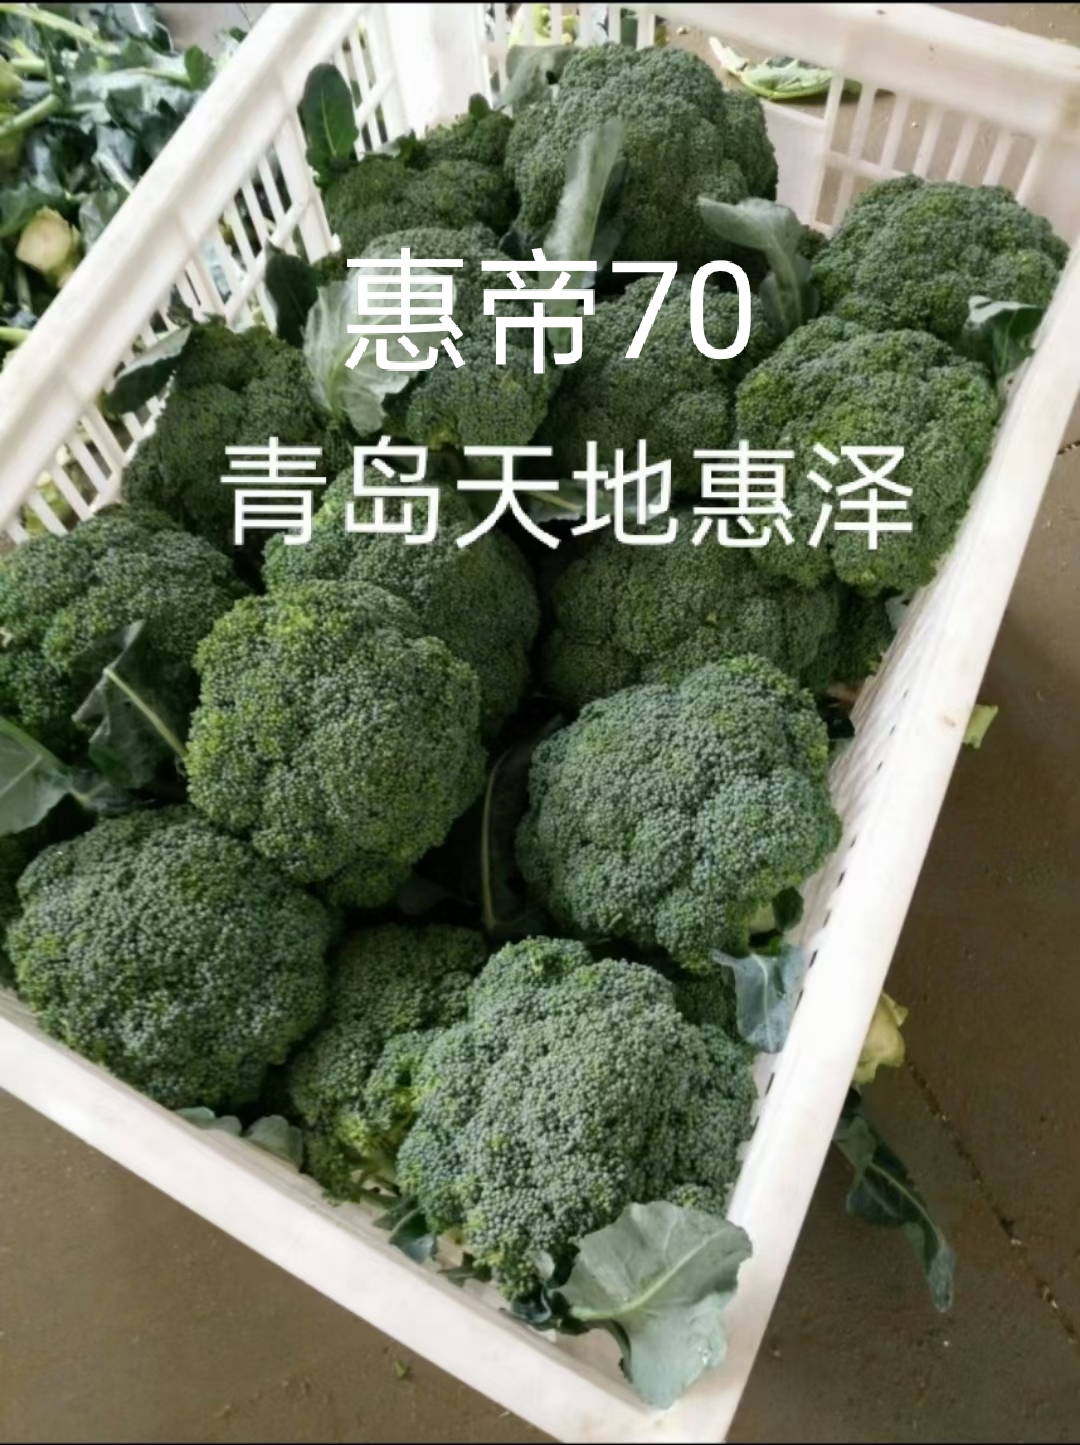 山东青岛惠帝70西兰花种子批发公司销售价格 惠帝70种子 惠泽-惠帝70种子